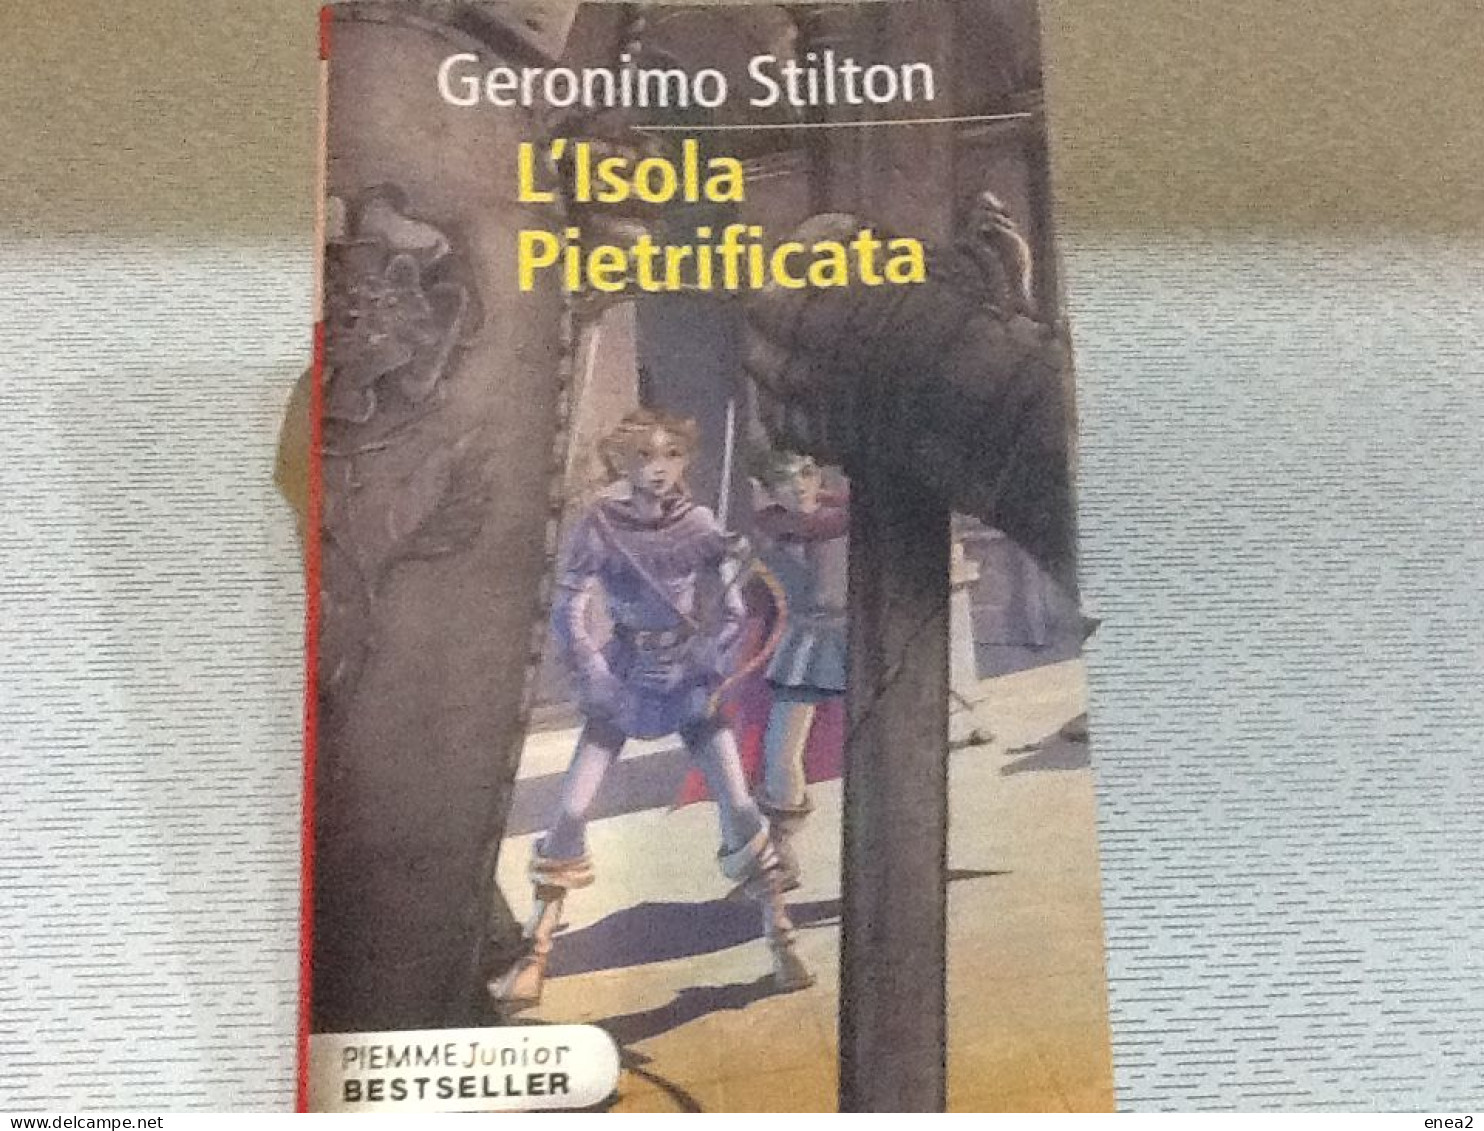 Geronimo Stilton - Romanzi Per Bambini - Colecciones